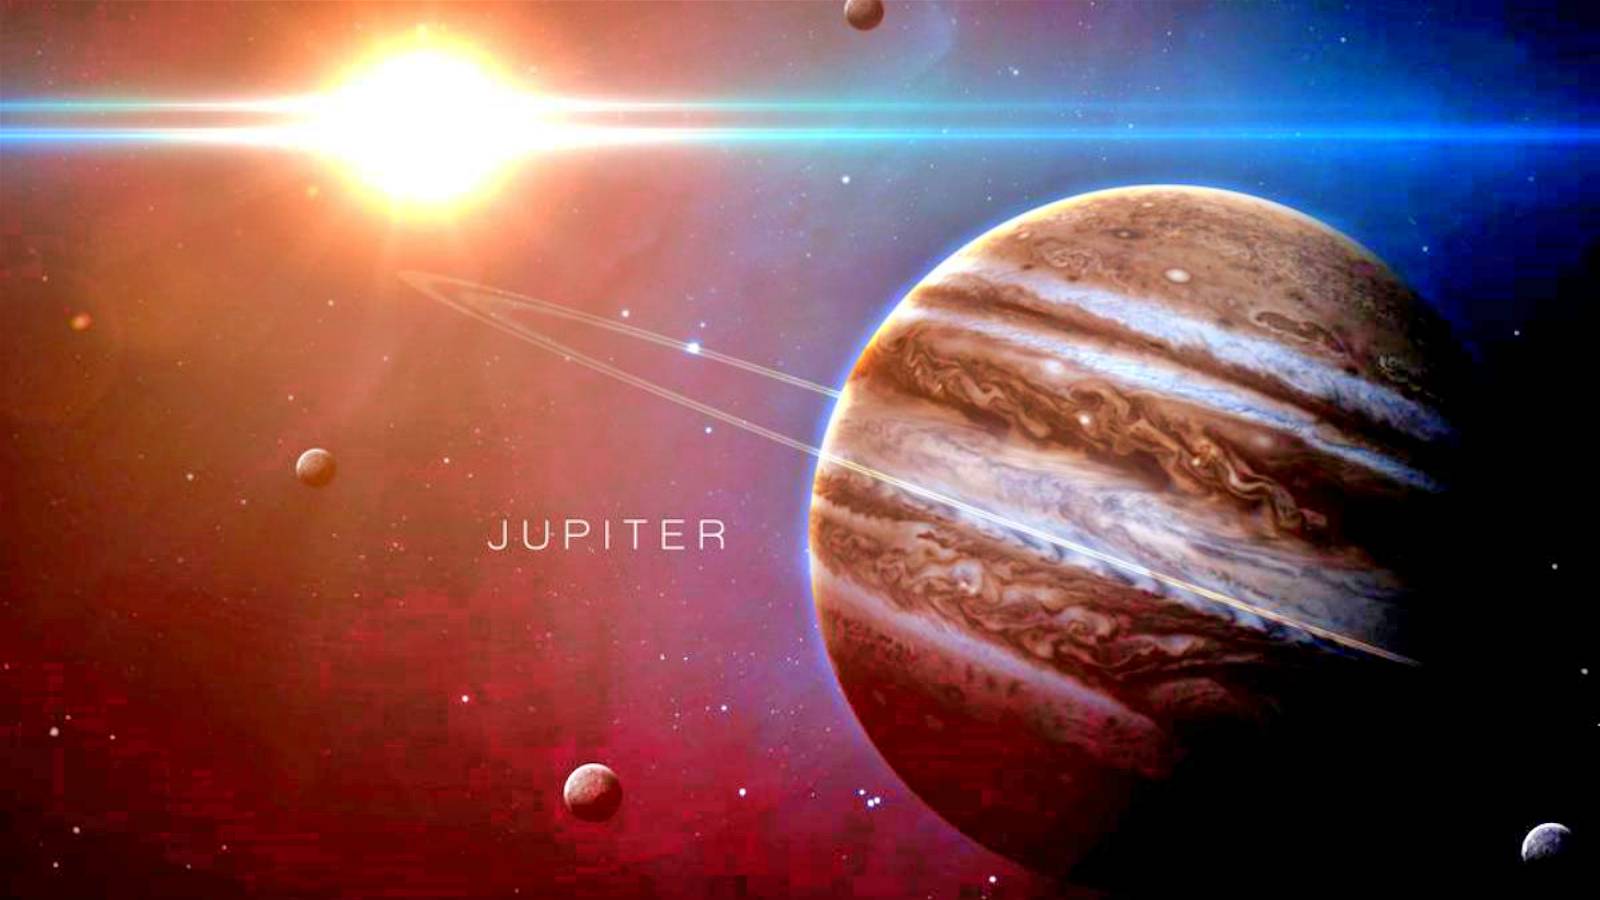 Planeta Júpiter: el notable descubrimiento de la sonda Juno de la NASA